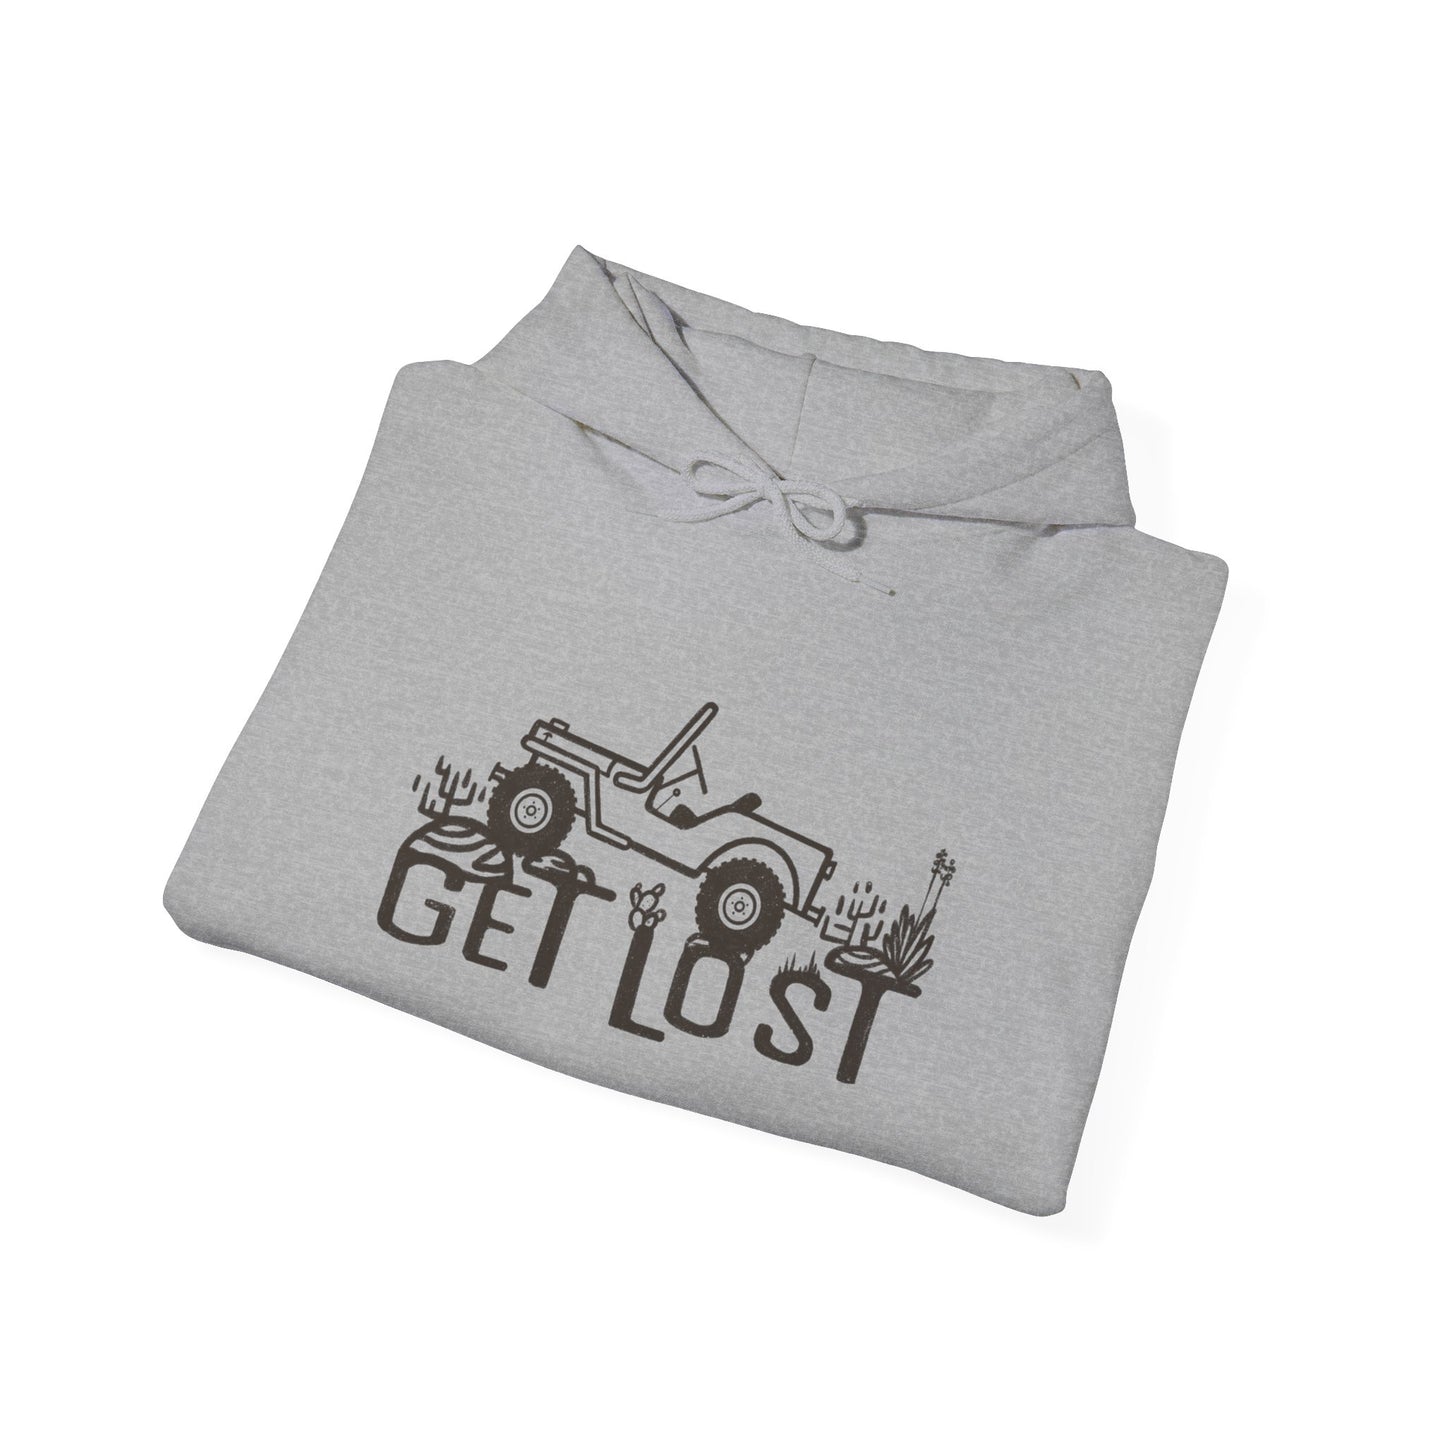 Get Lost Hooded Sweatshirt